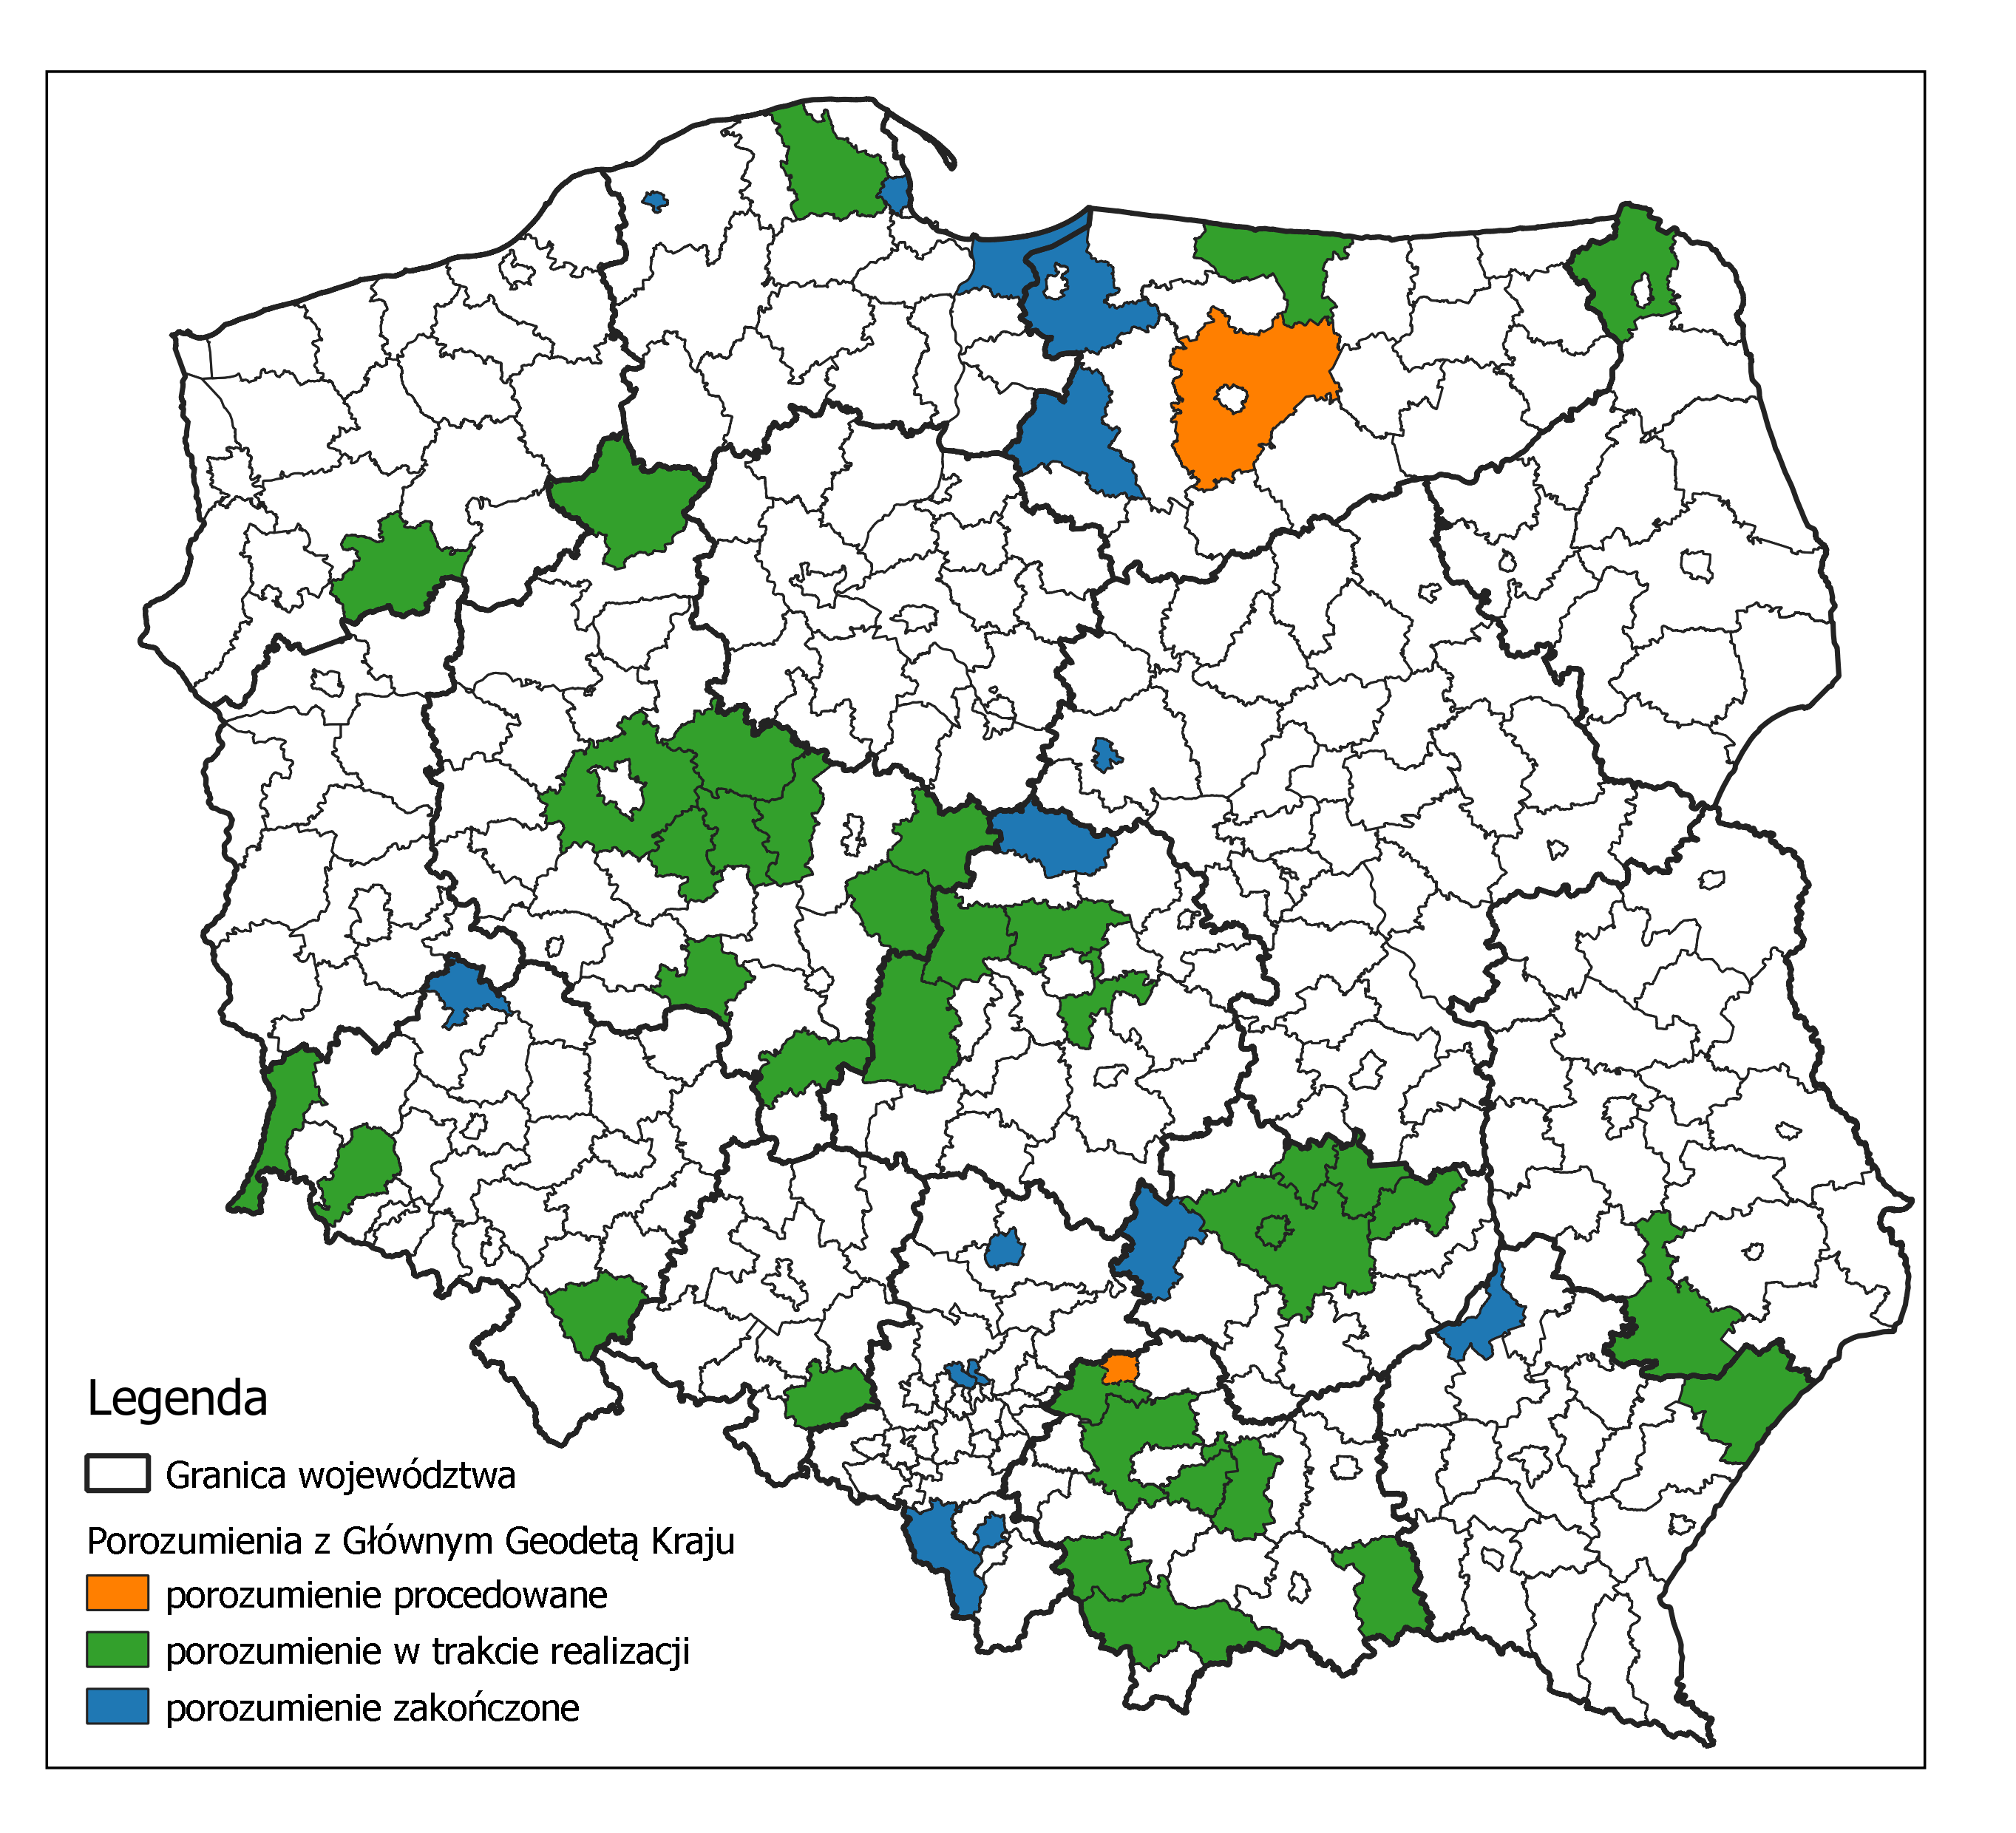 Ilustracja przedstawia mapę Polski z oznaczonymi kolorystycznie powiatami, z którymi zawarte zostało porozumienie.